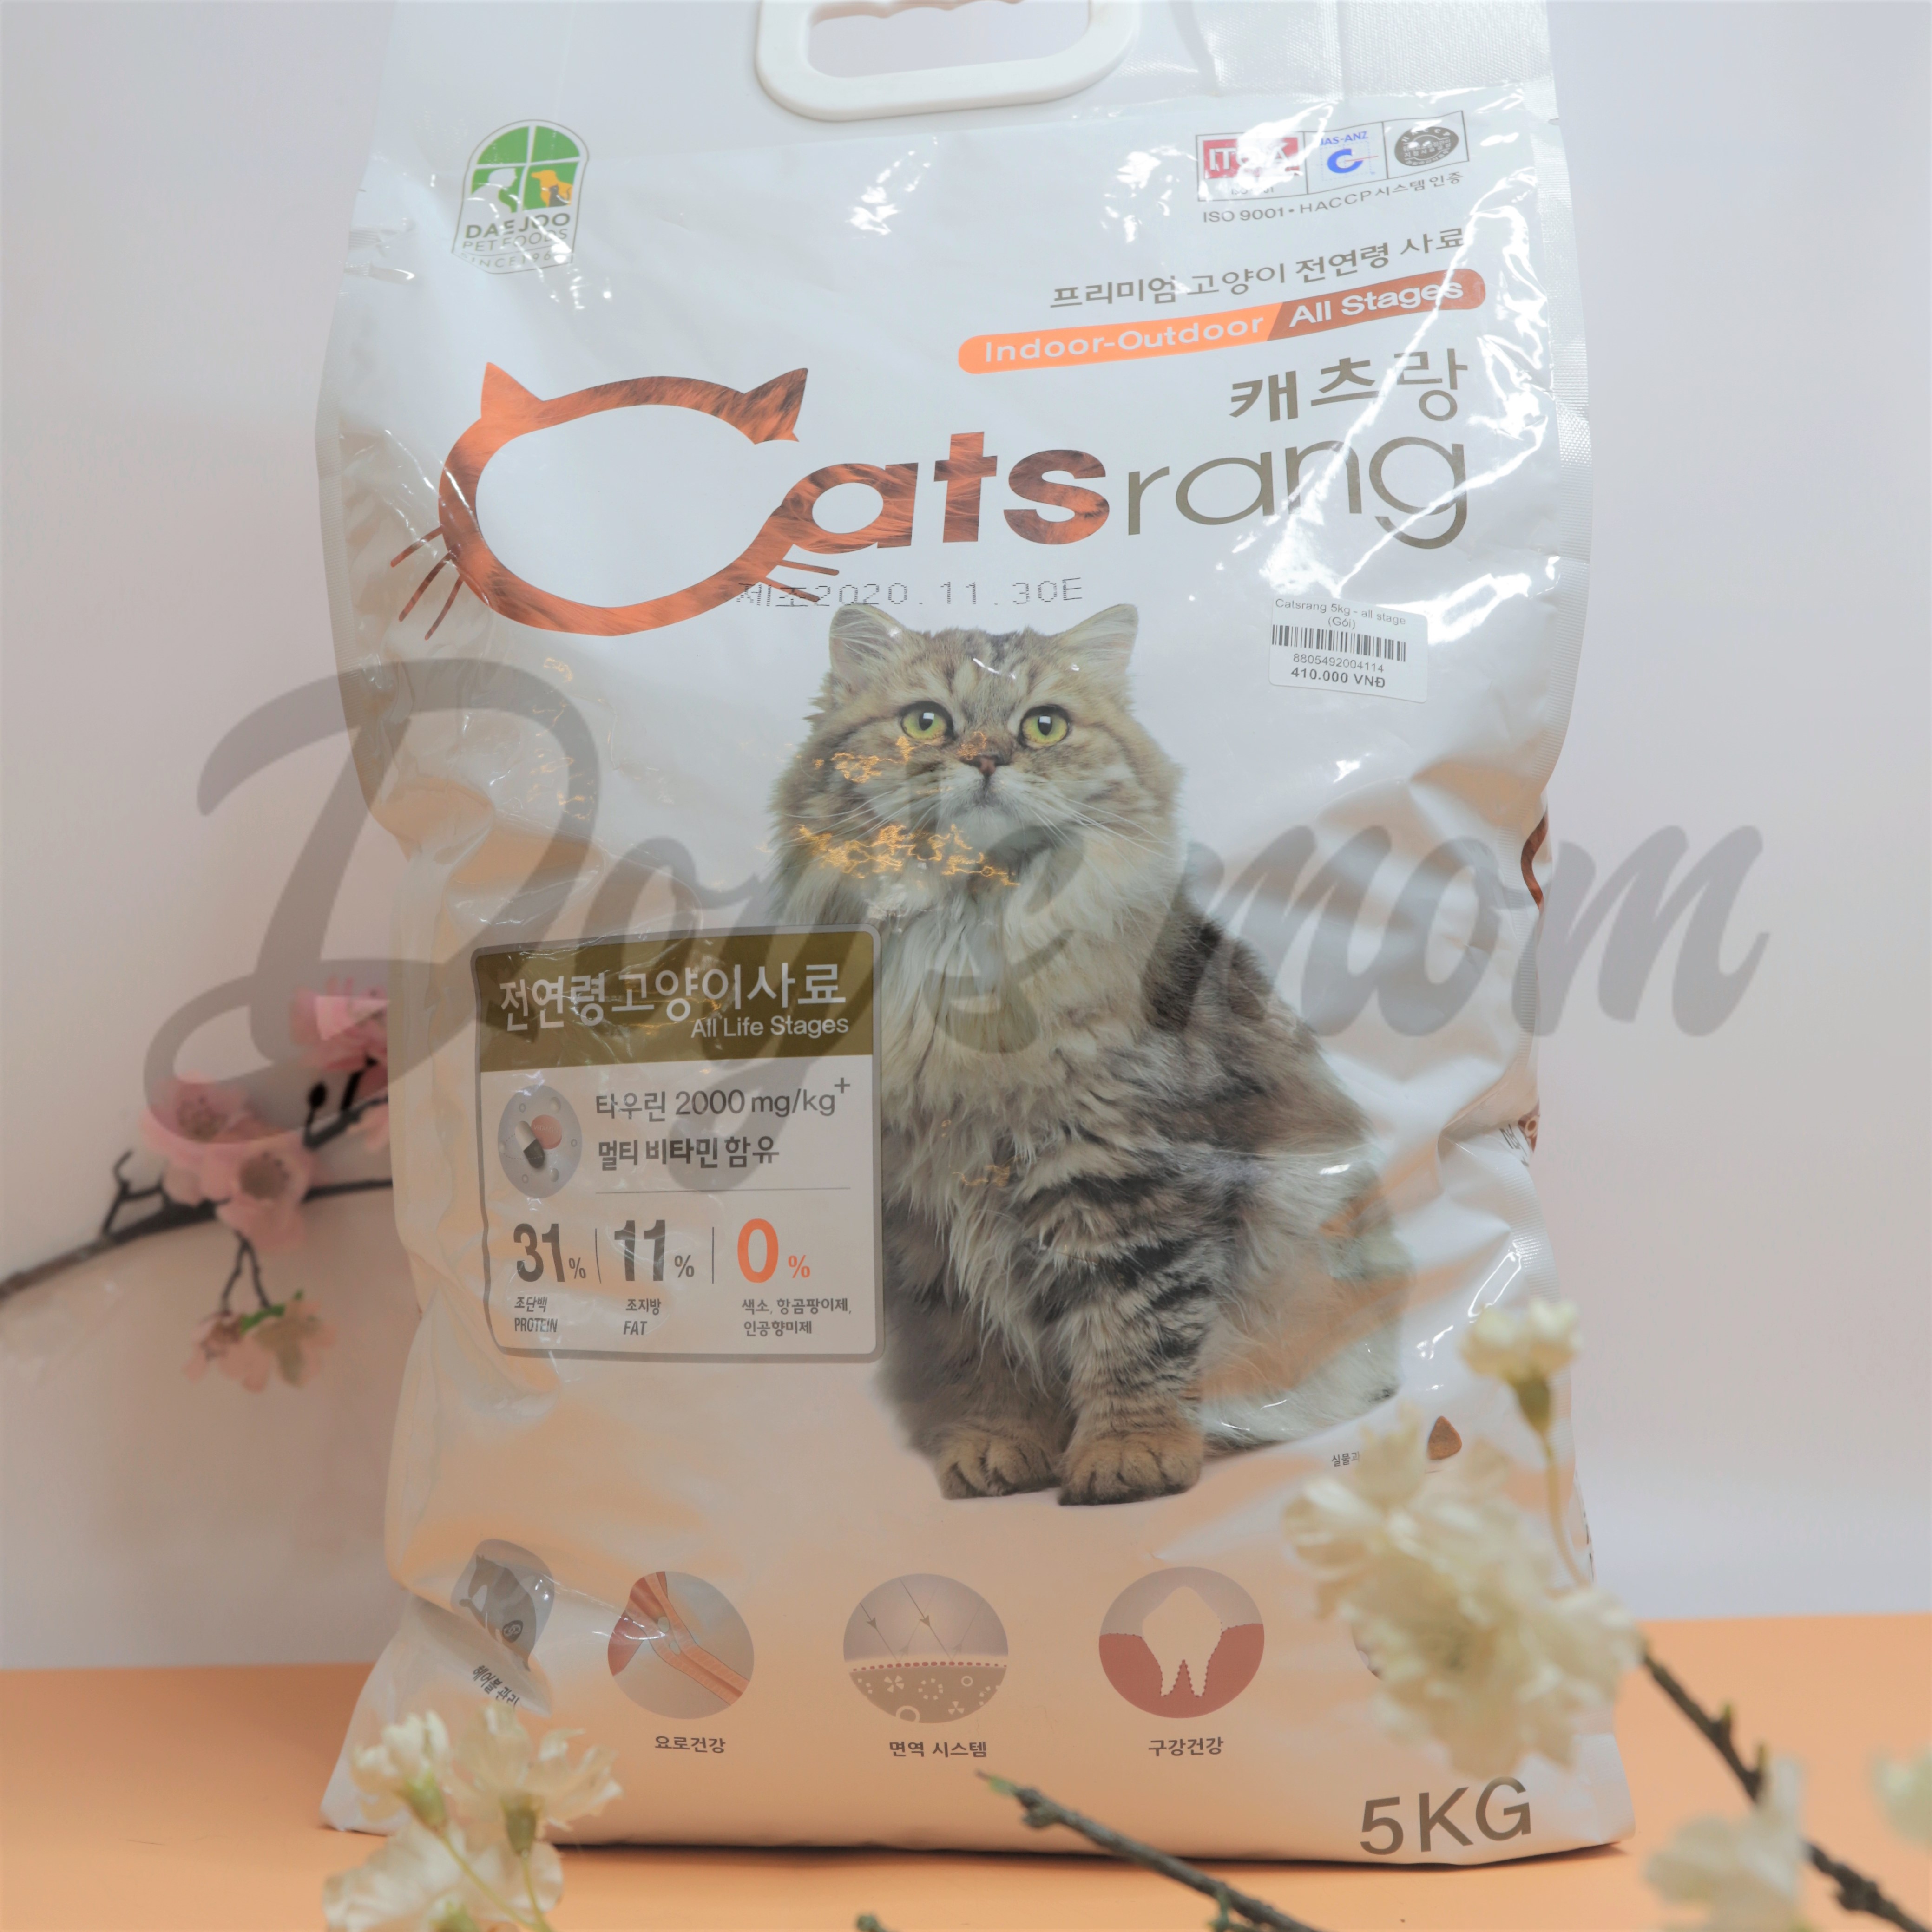 Thức ăn cho Mèo Catsrang 5kg - All Stage